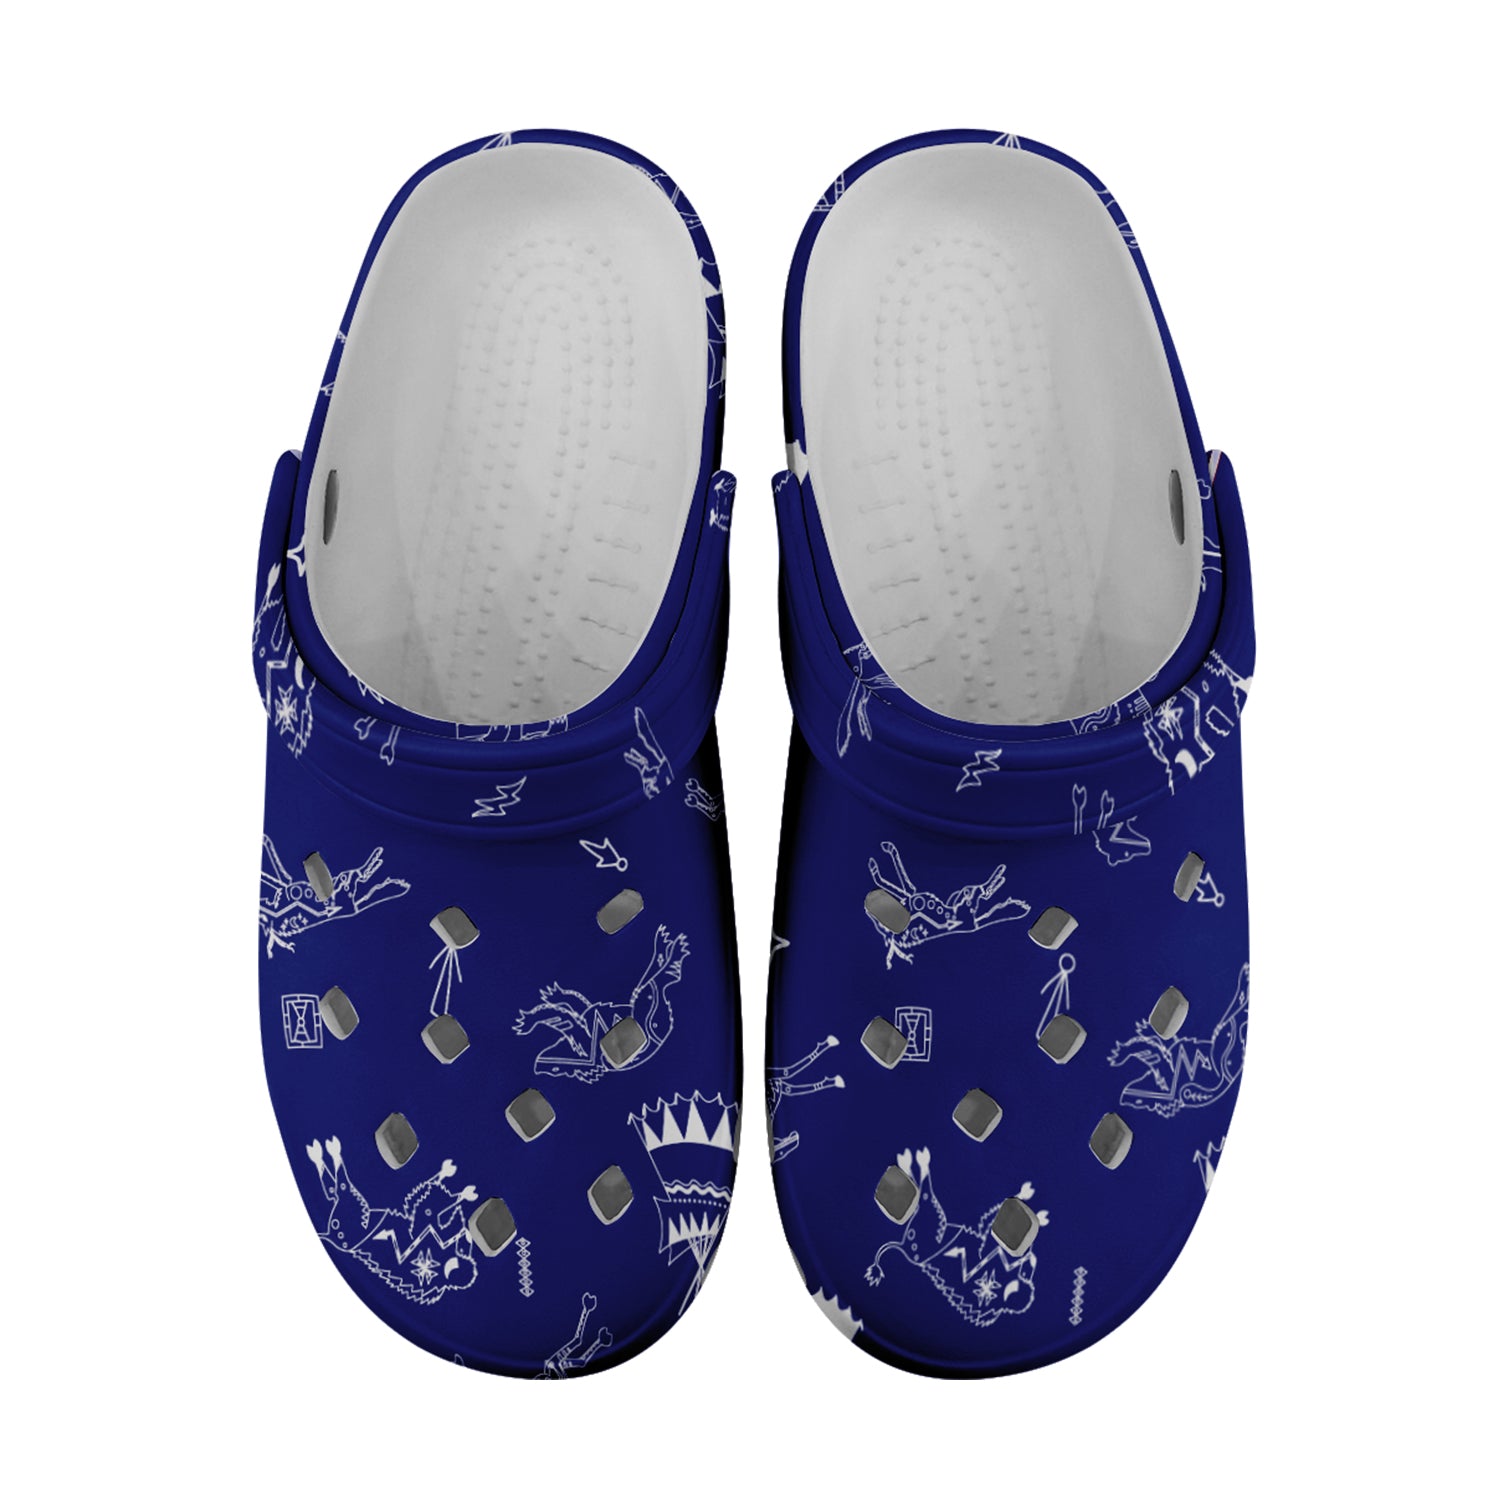 Ledger Dables Blue Muddies Unisex Clog Shoes